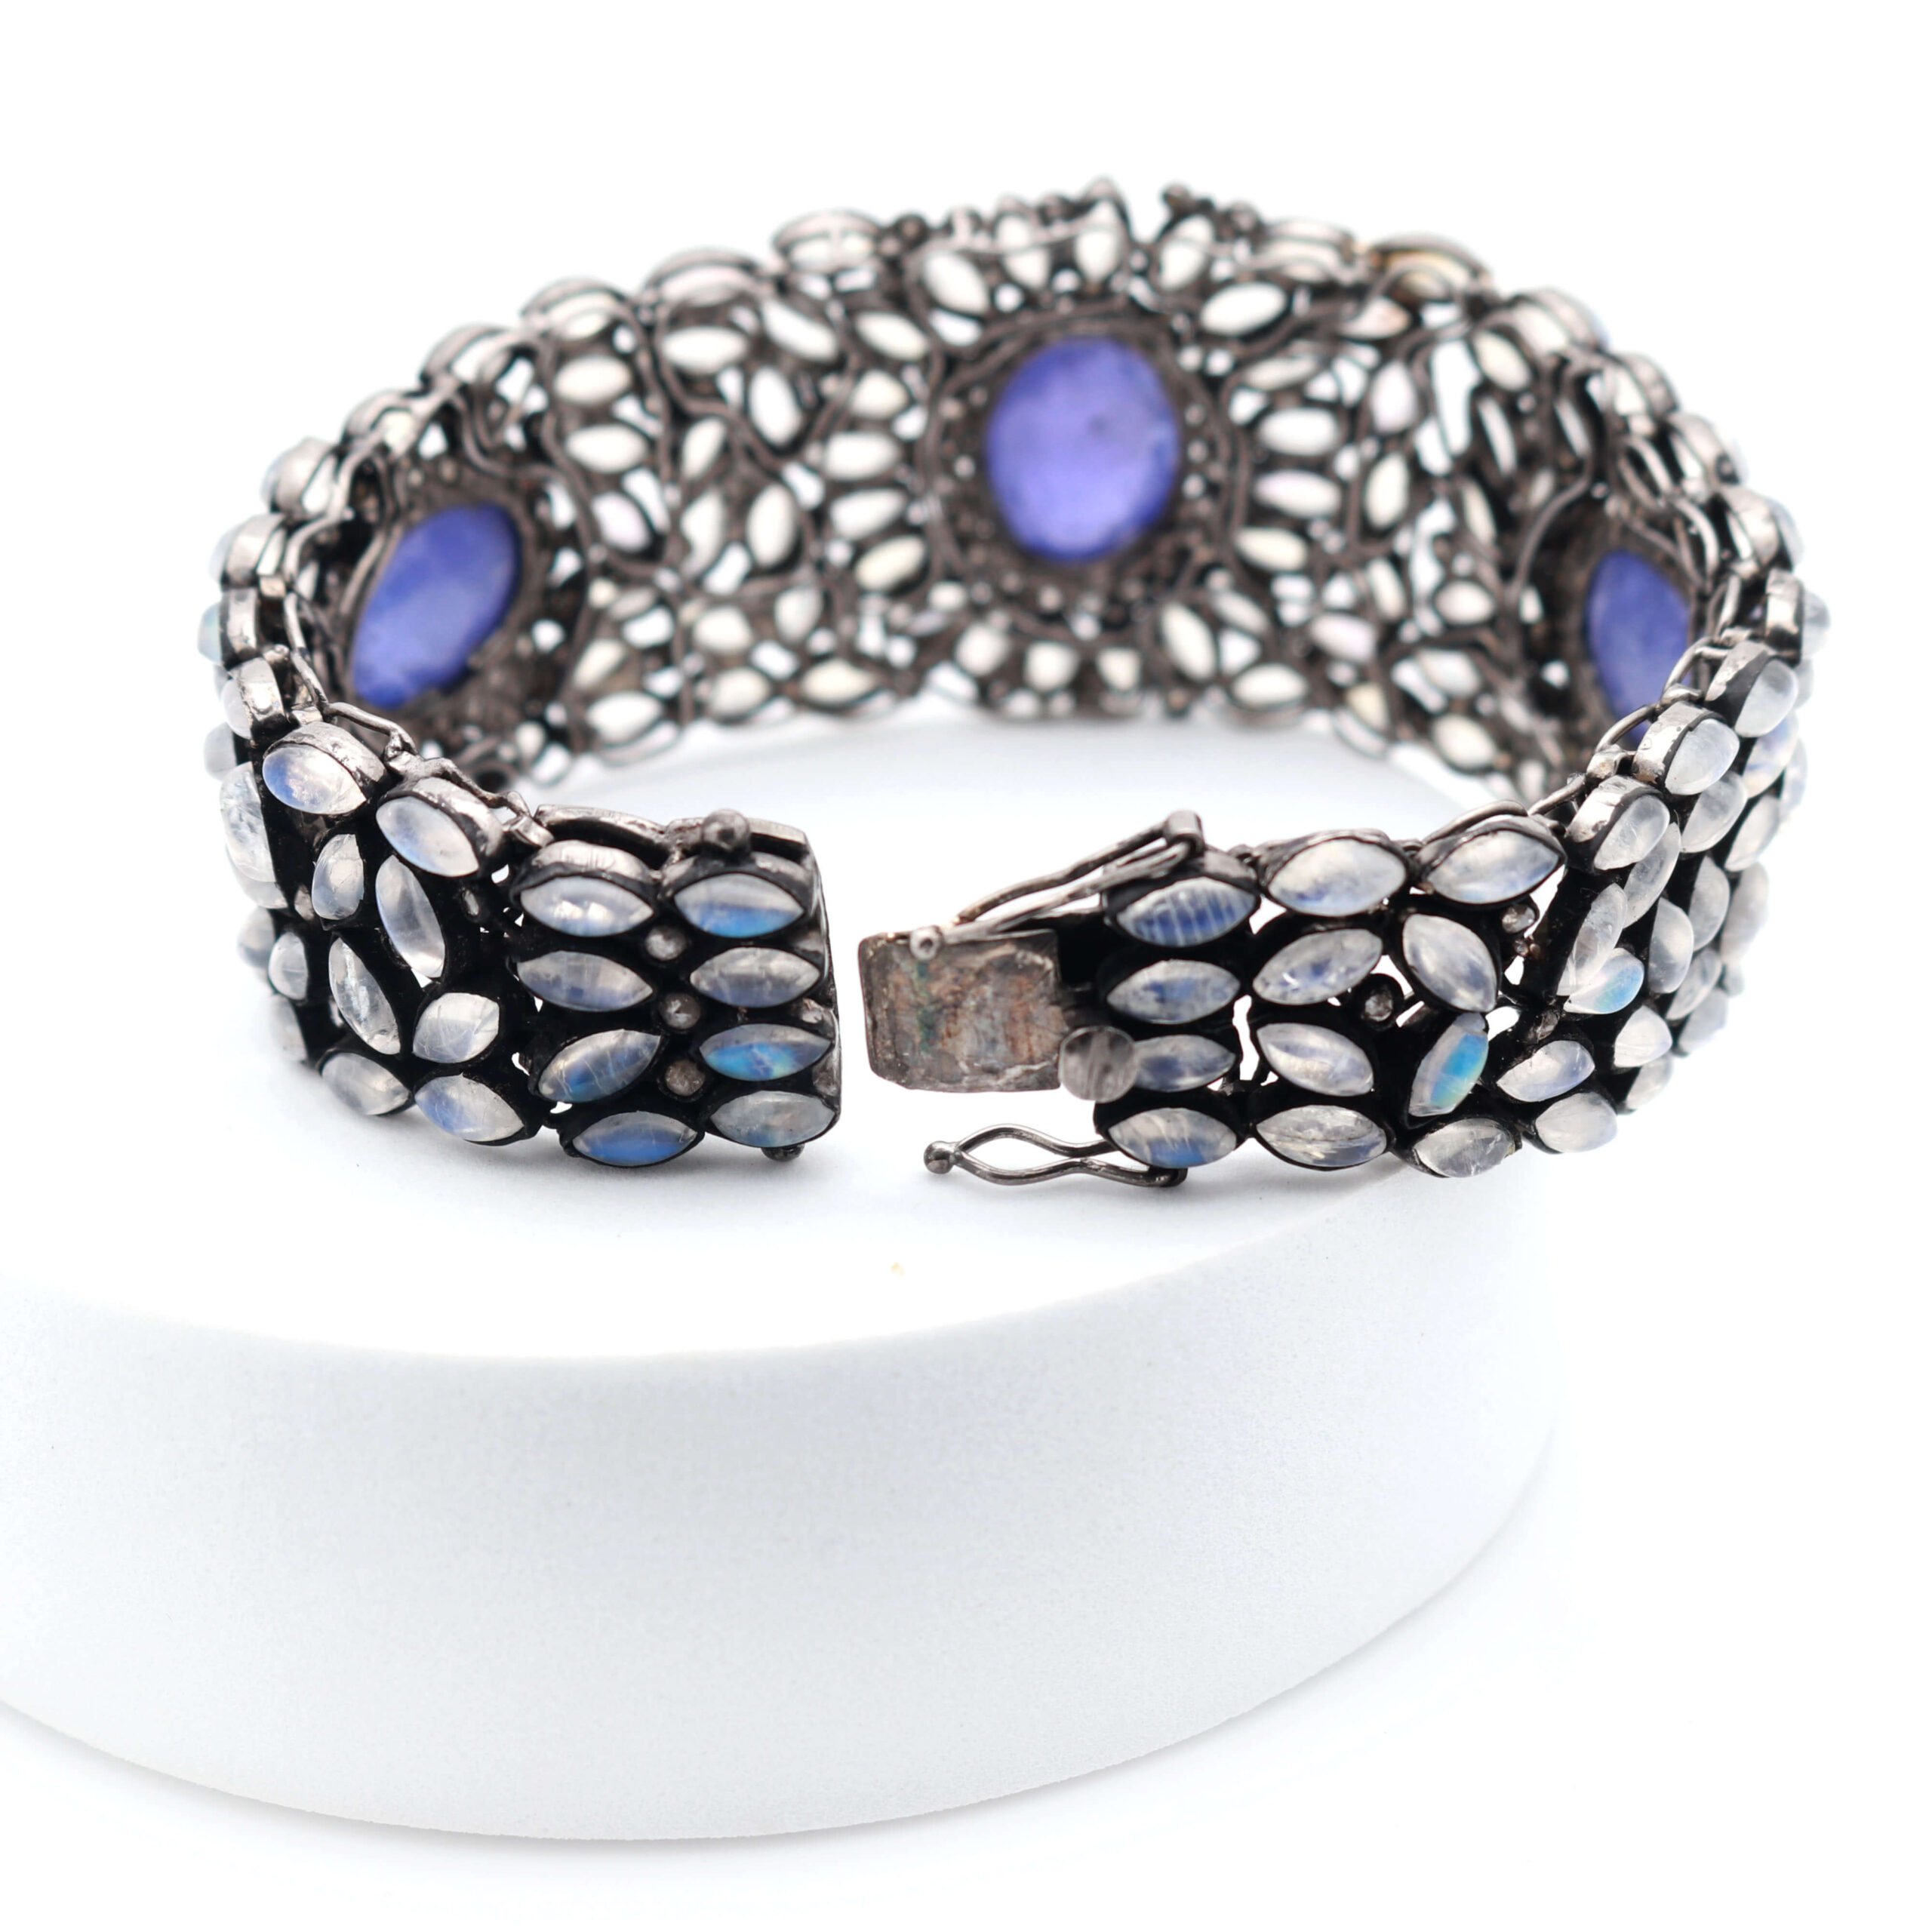 Buy Tanzanite Bracelets Online for Women | Rose Jewellery